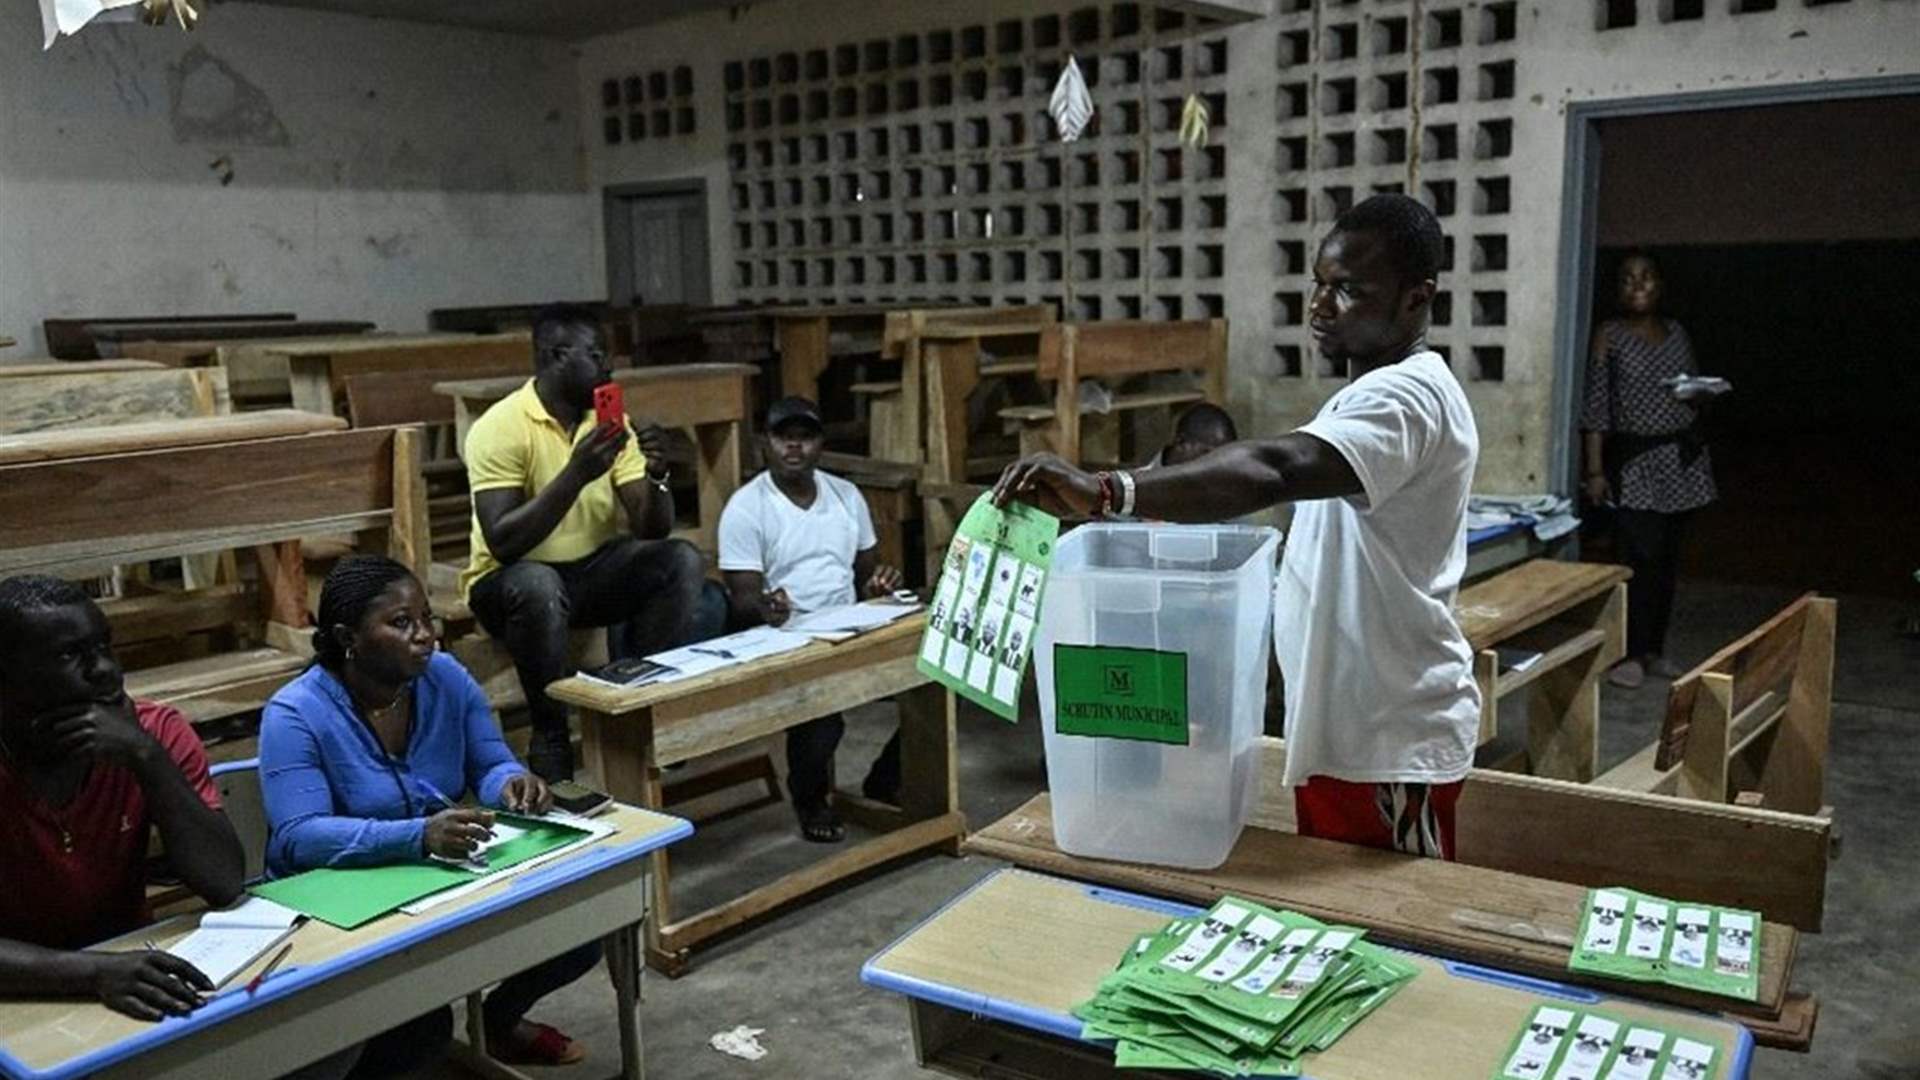 فوز ساحق للحزب الحاكم في الانتخابات المحلية في ساحل العاج في نتائج شبه نهائية